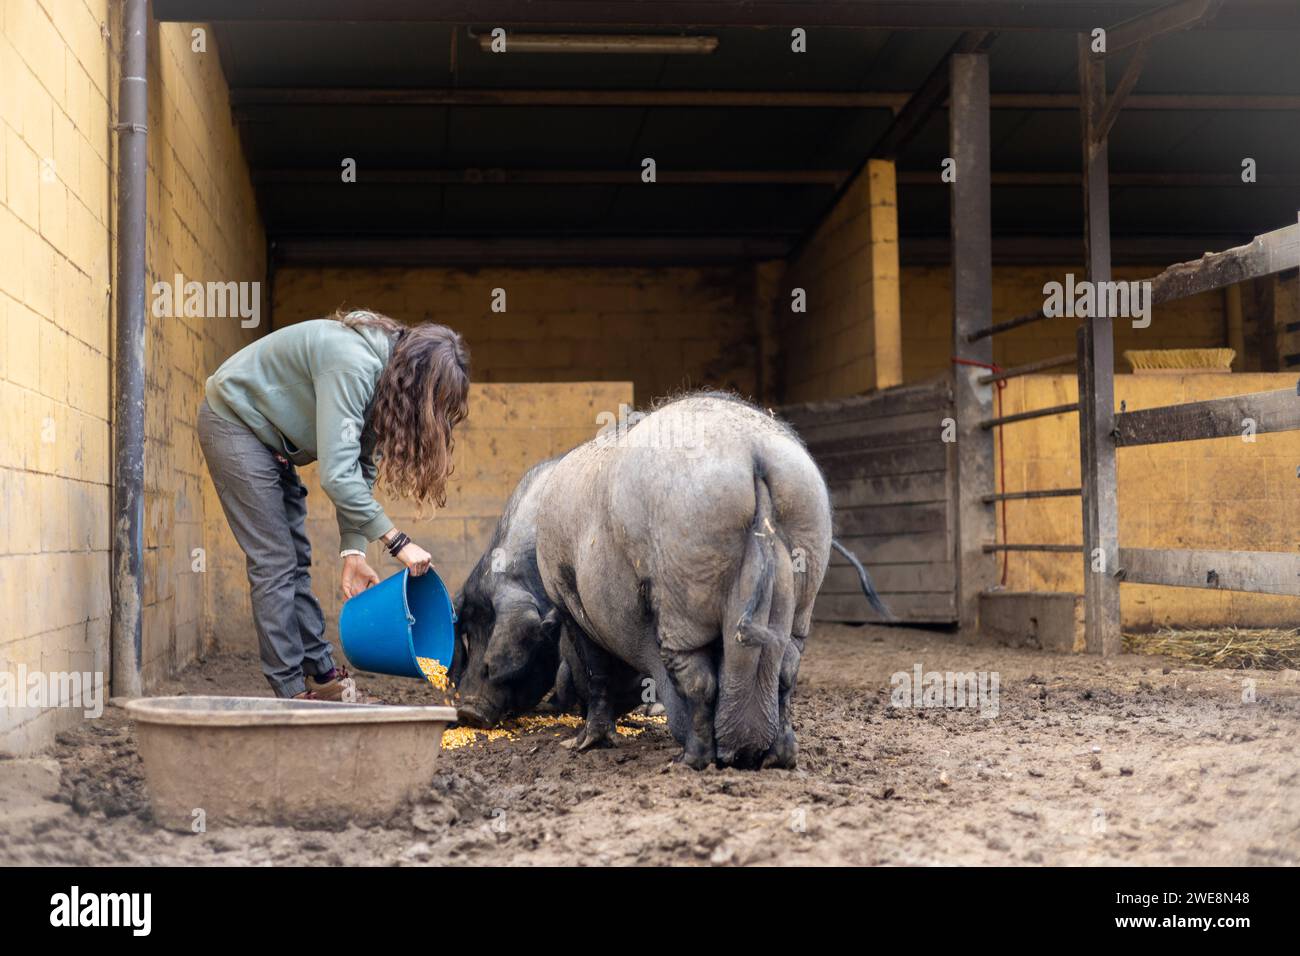 Jeune agricultrice nourrissant des porcs noirs de Majorque pour la sobrasada dans une ferme biologique rurale. Soins et bien-être des animaux en plein air. Banque D'Images